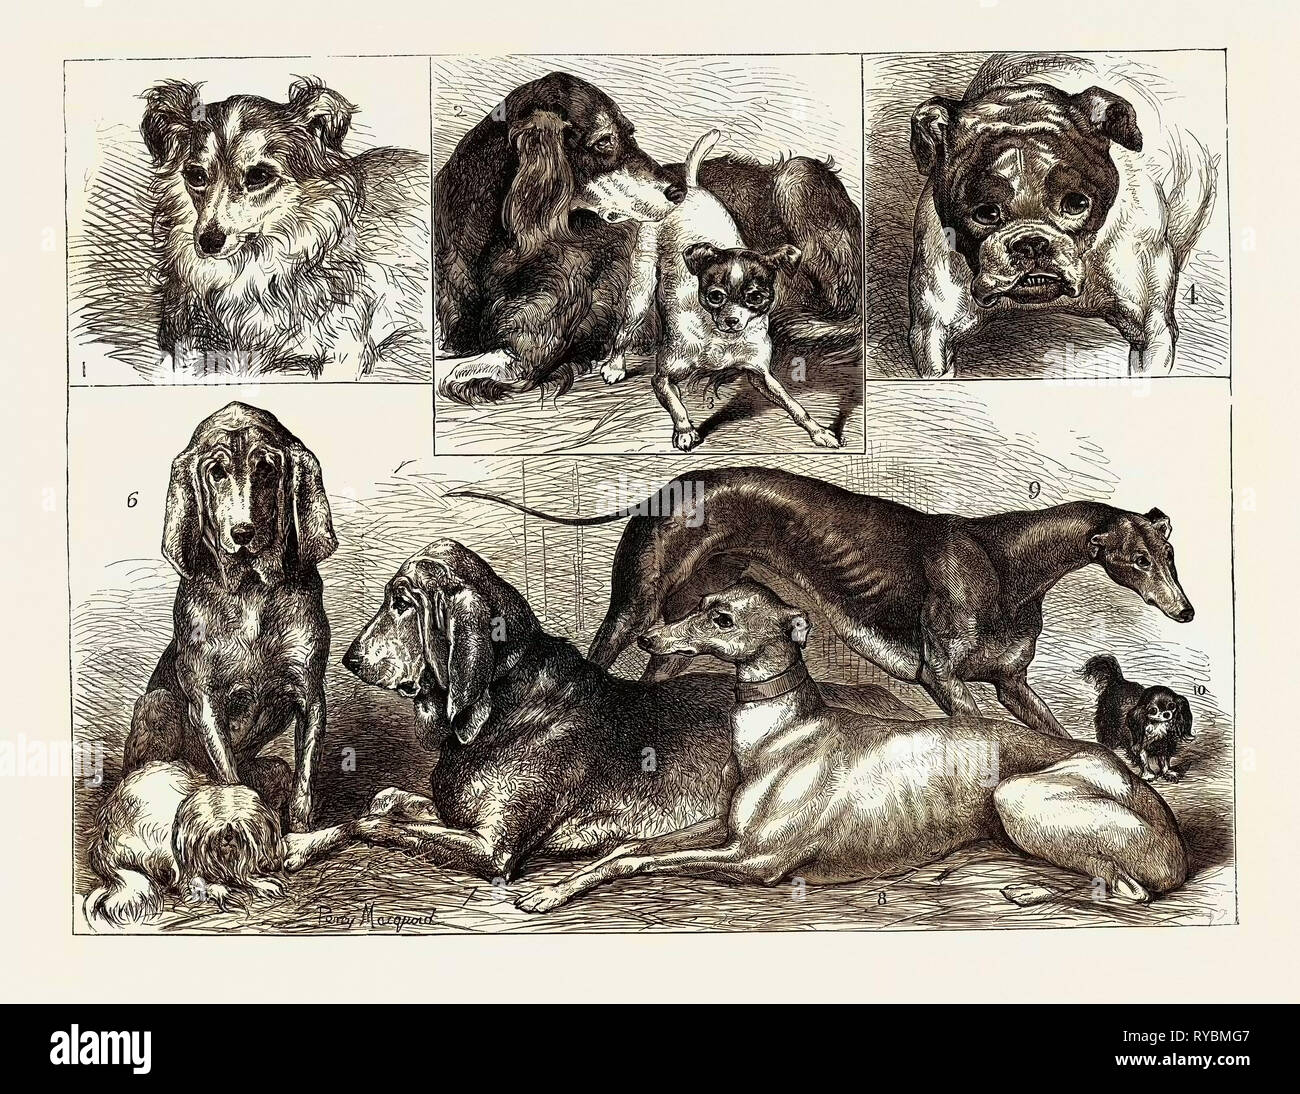 Preis Hunde im Crystal Palace zeigen: 1. 'Myrtle", Schäferhund, den zweiten Preis, 2. 'Lang', Setter, Erster Preis, 3. Der Topf, "Fox-Terrier, Erster Preis, 4. "Ajax", Bulldogge, Erster Preis, 5. Bin opsy", Maltesisch, Erster Preis, 6. 'Dingle", Bloodhound (weiblich), den ersten Preis, 7. "Roswell", Bloodhound (Männlich), den ersten Preis, 8. Greyhound (weiblich), den ersten Preis, 9. Greyhound (Männlich), den ersten Preis, 10. "Charlie, "King Charles Spaniel, den zweiten Preis Stockfoto